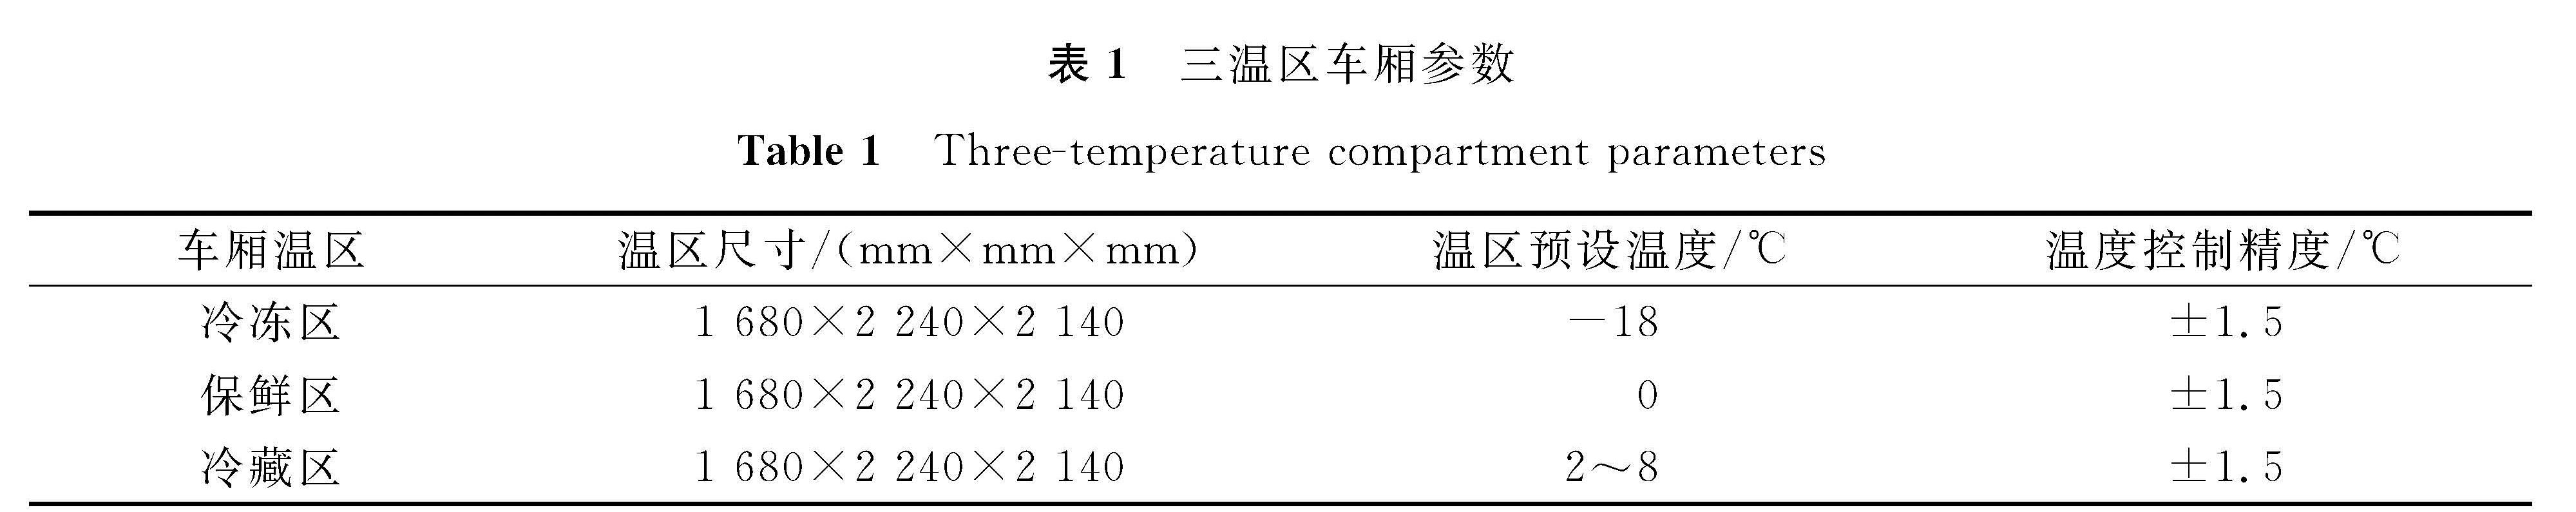 表1 三温区车厢参数<br/>Table 1 Three-temperature compartment parameters